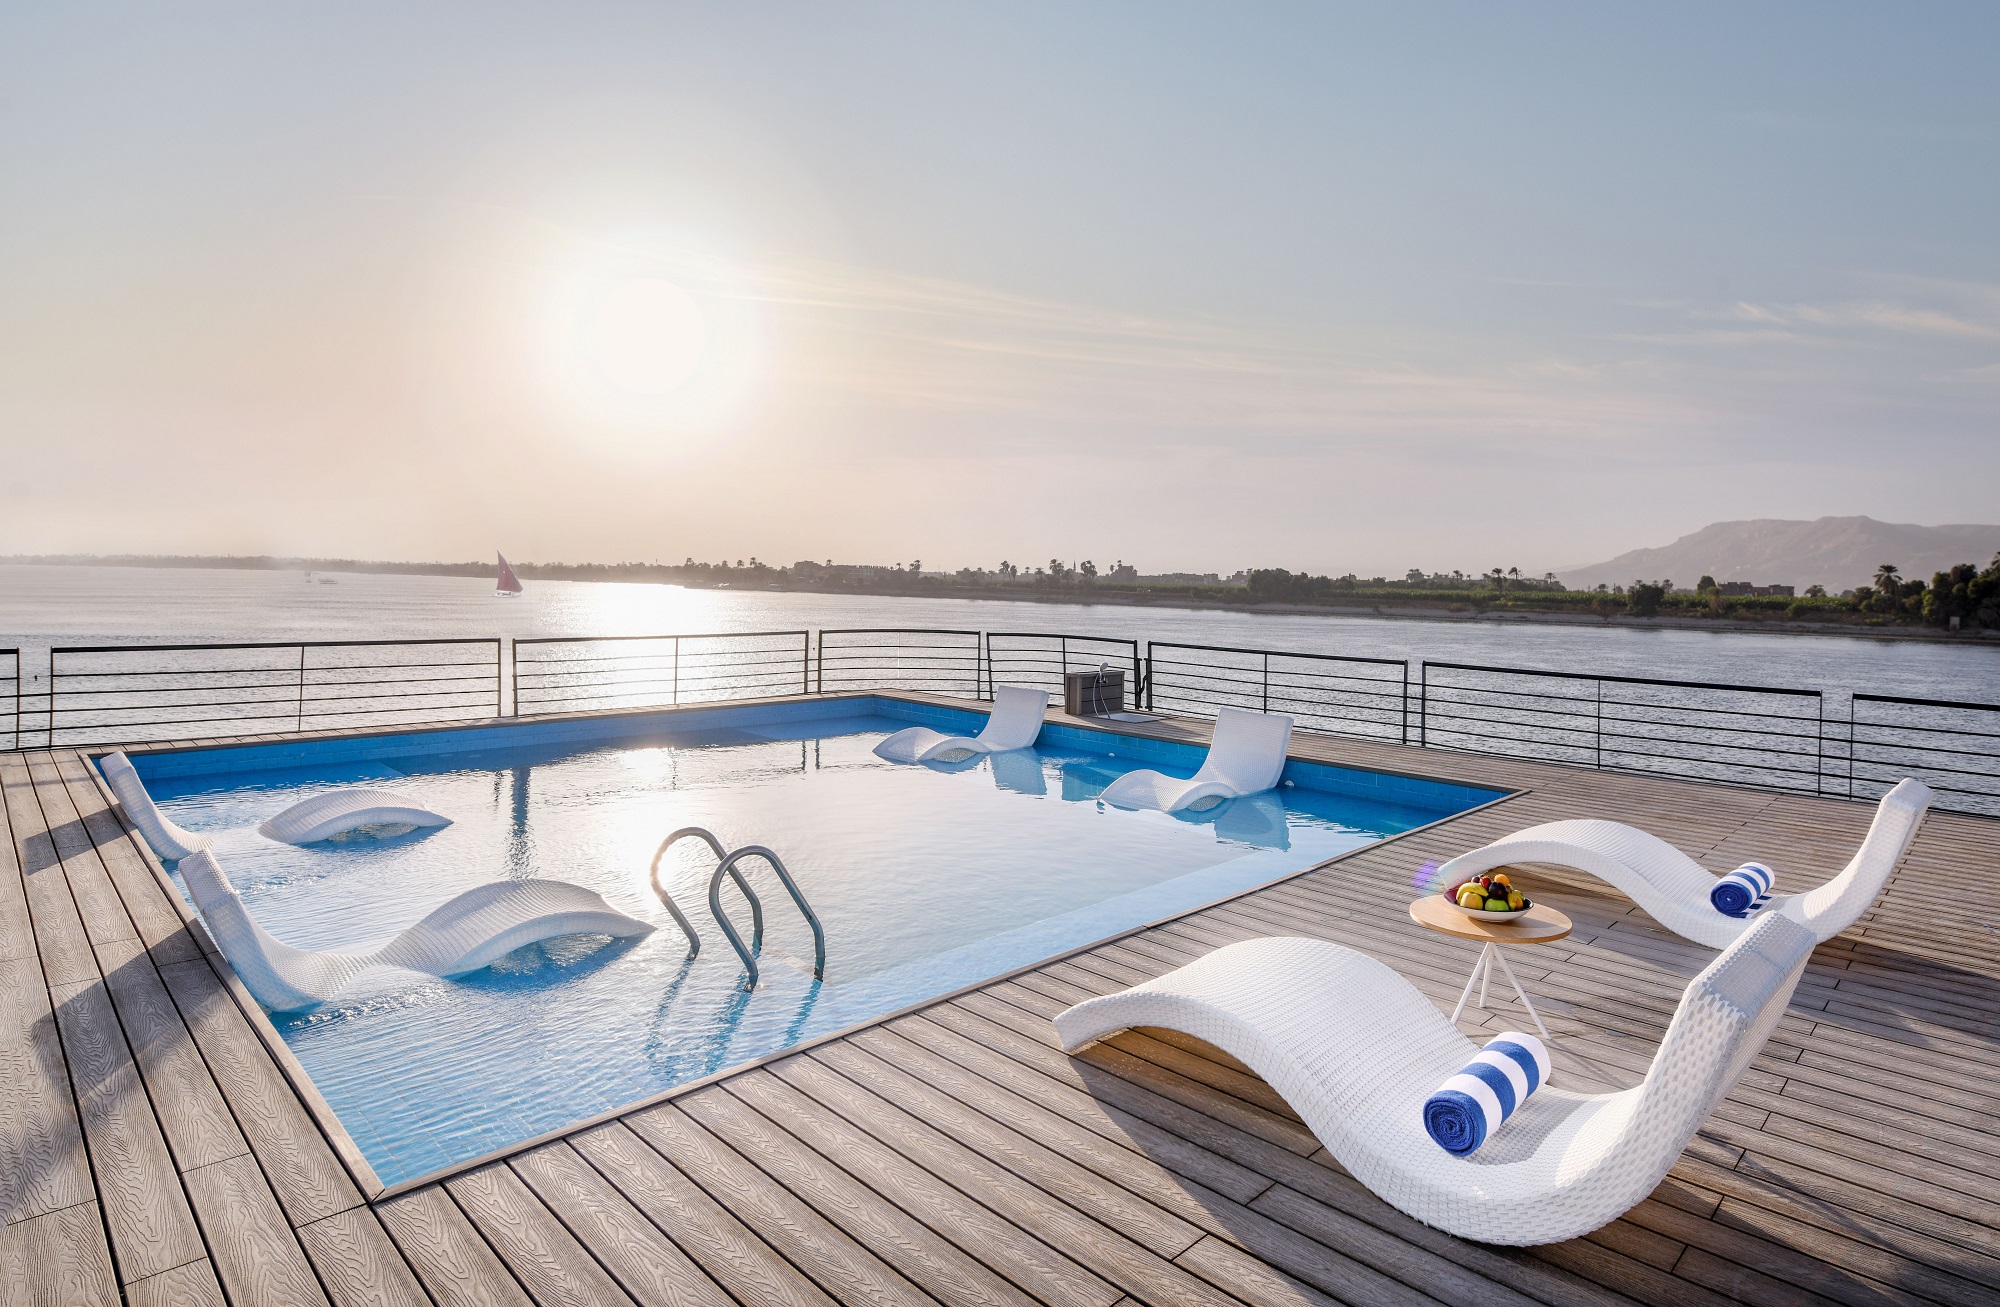 Historia Luxury Nile Cruise